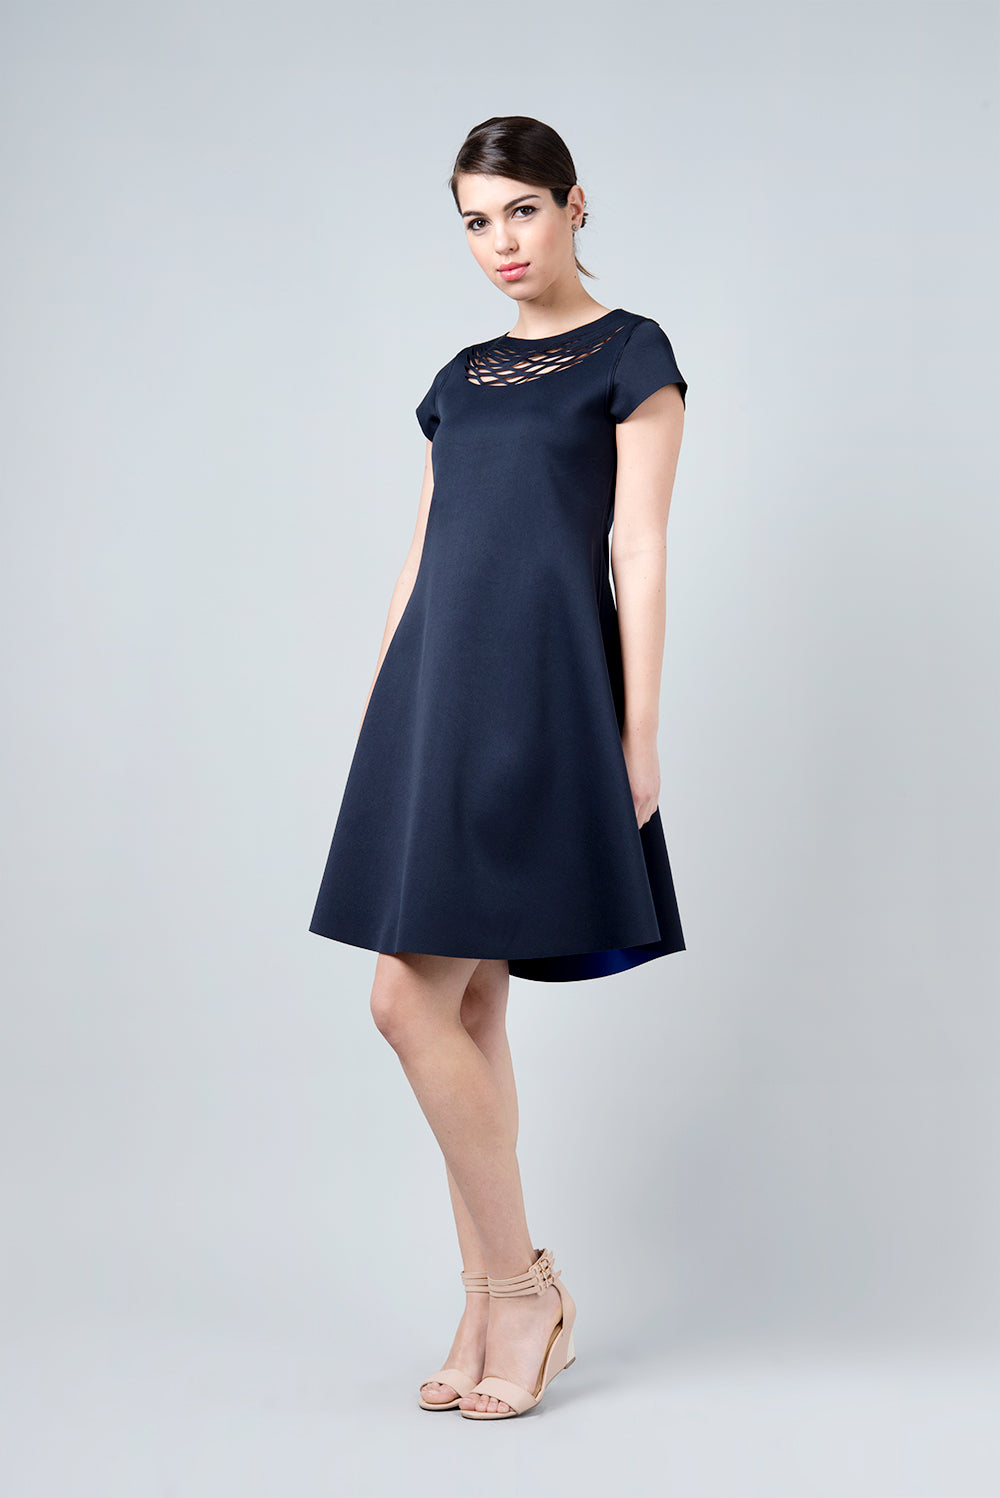 Double sided blue and navy dress - Omega I/O dress